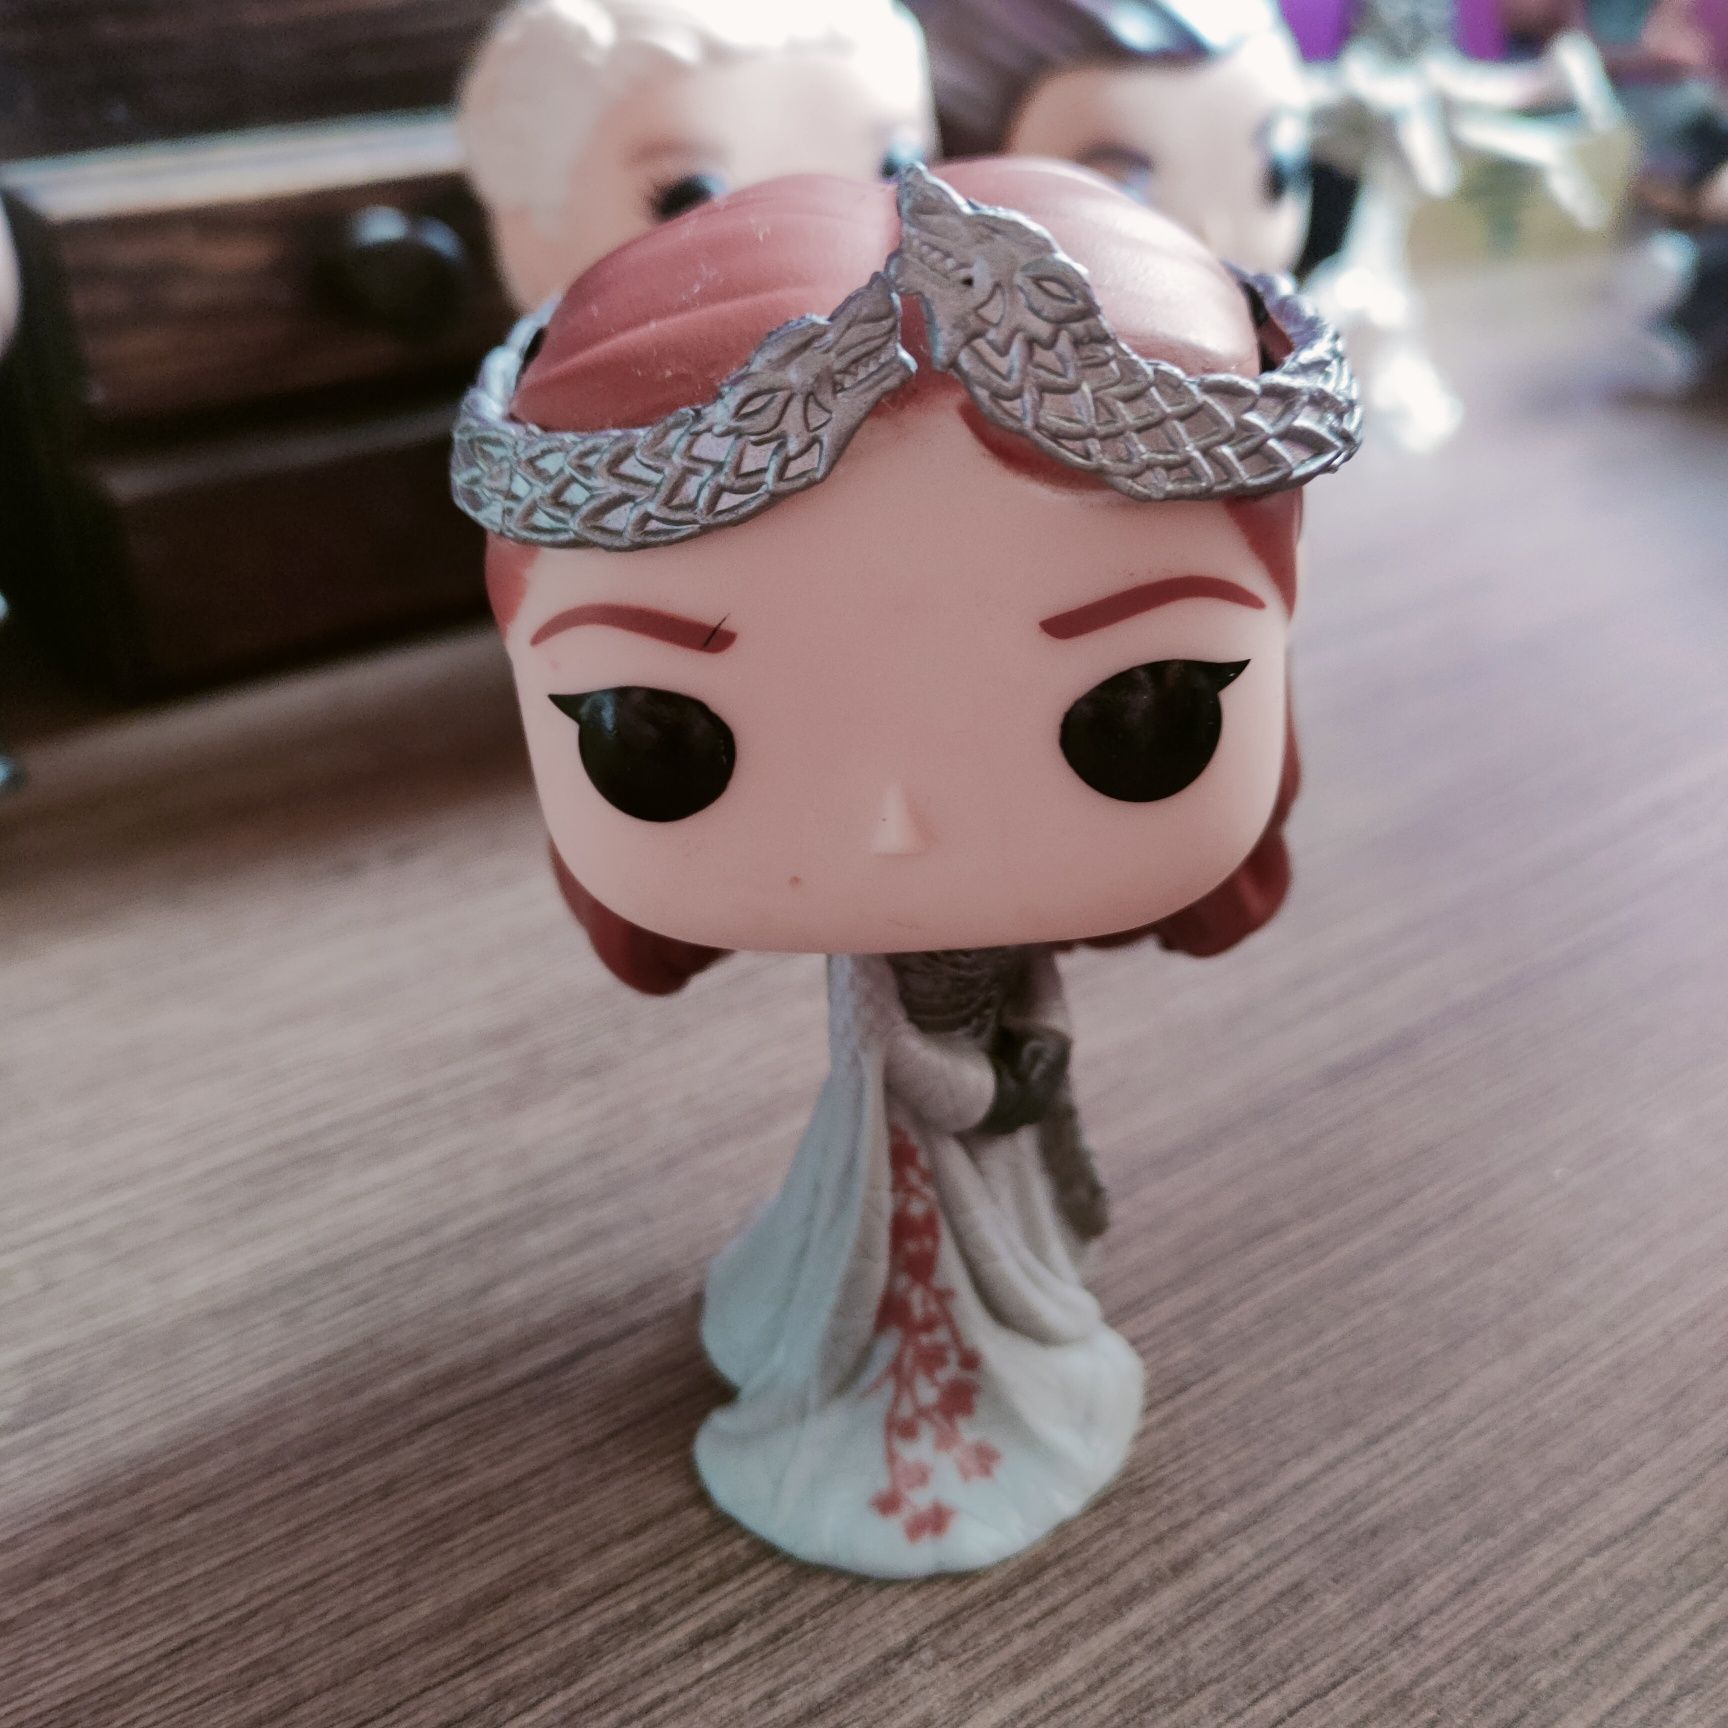 Sansa Stark, Gra o tron